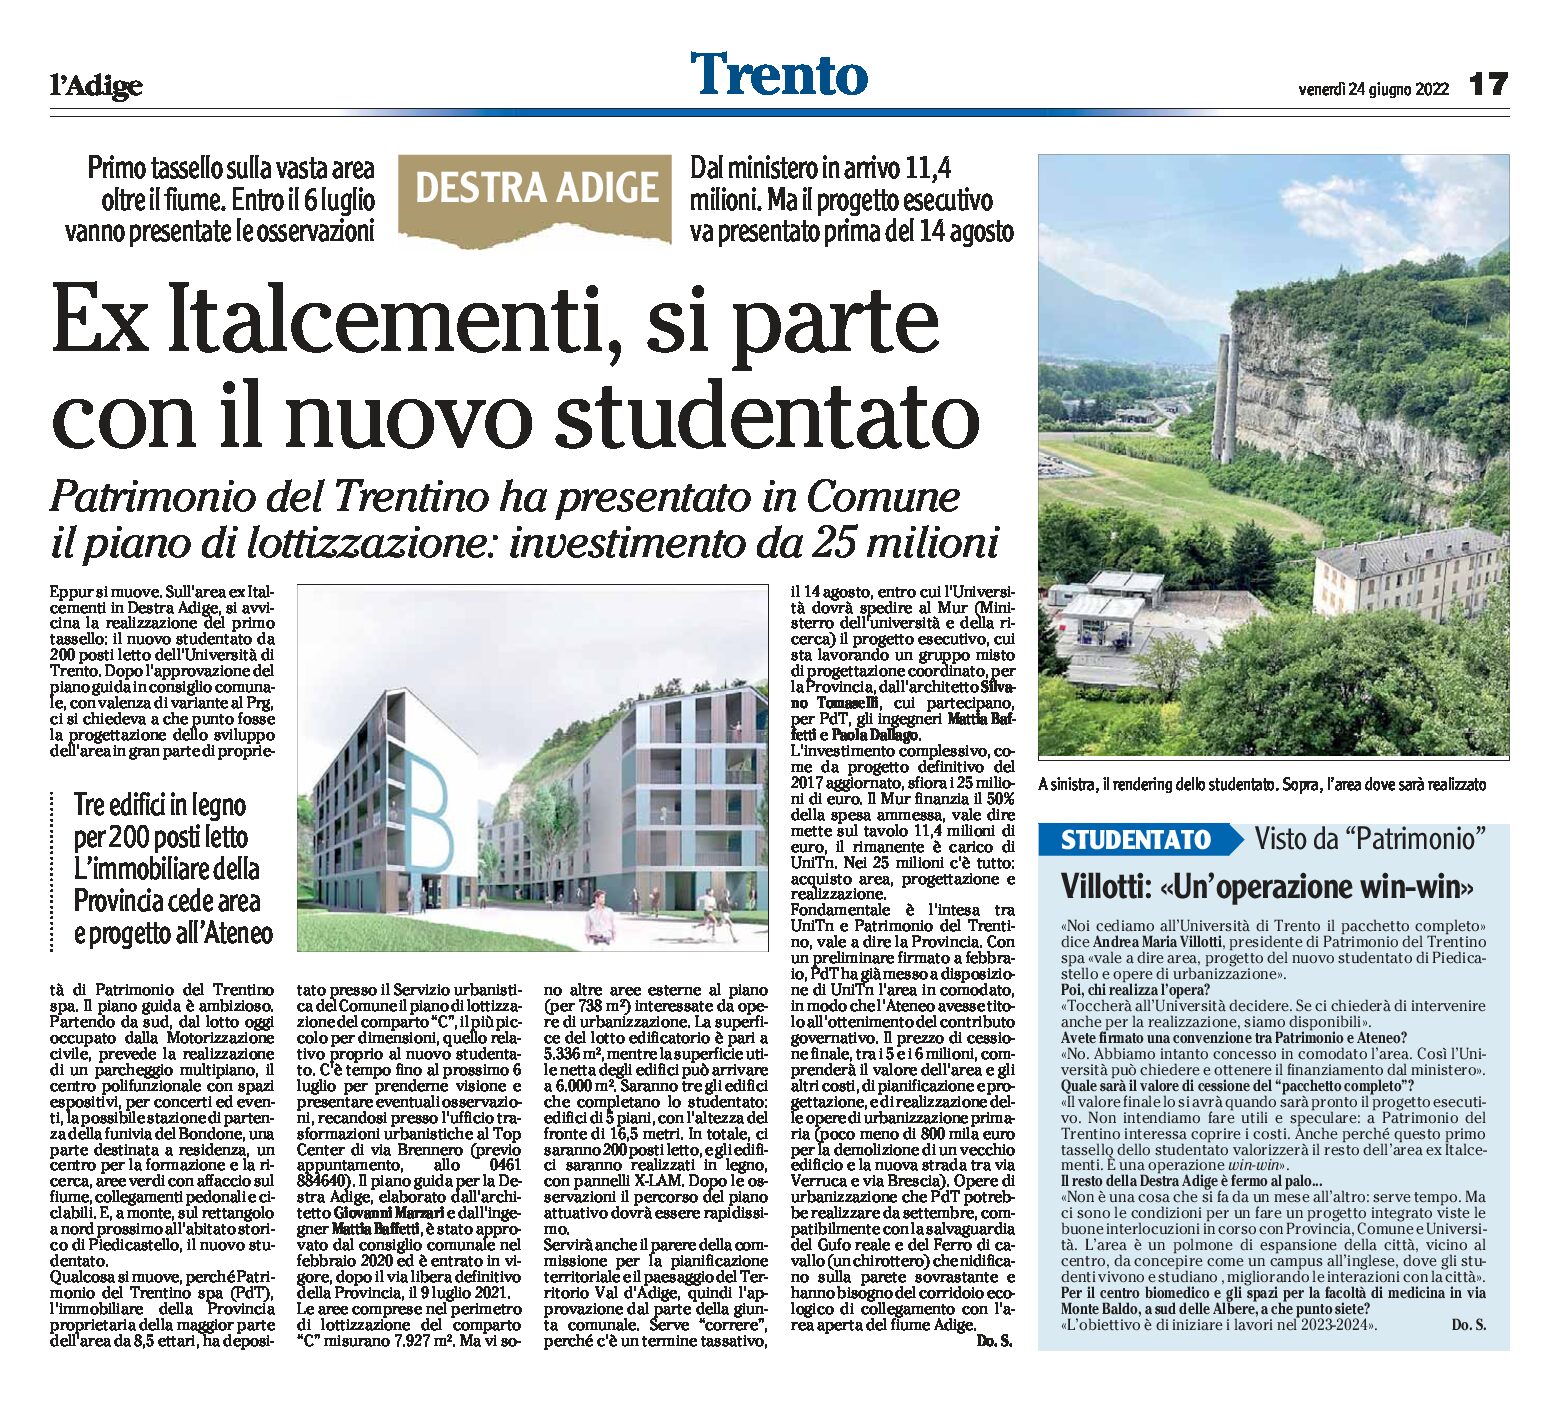 Trento, ex Italcementi: si parte con il nuovo studentato. Patrimonio del Trentino ha presentato in Comune il piano di lottizzazione